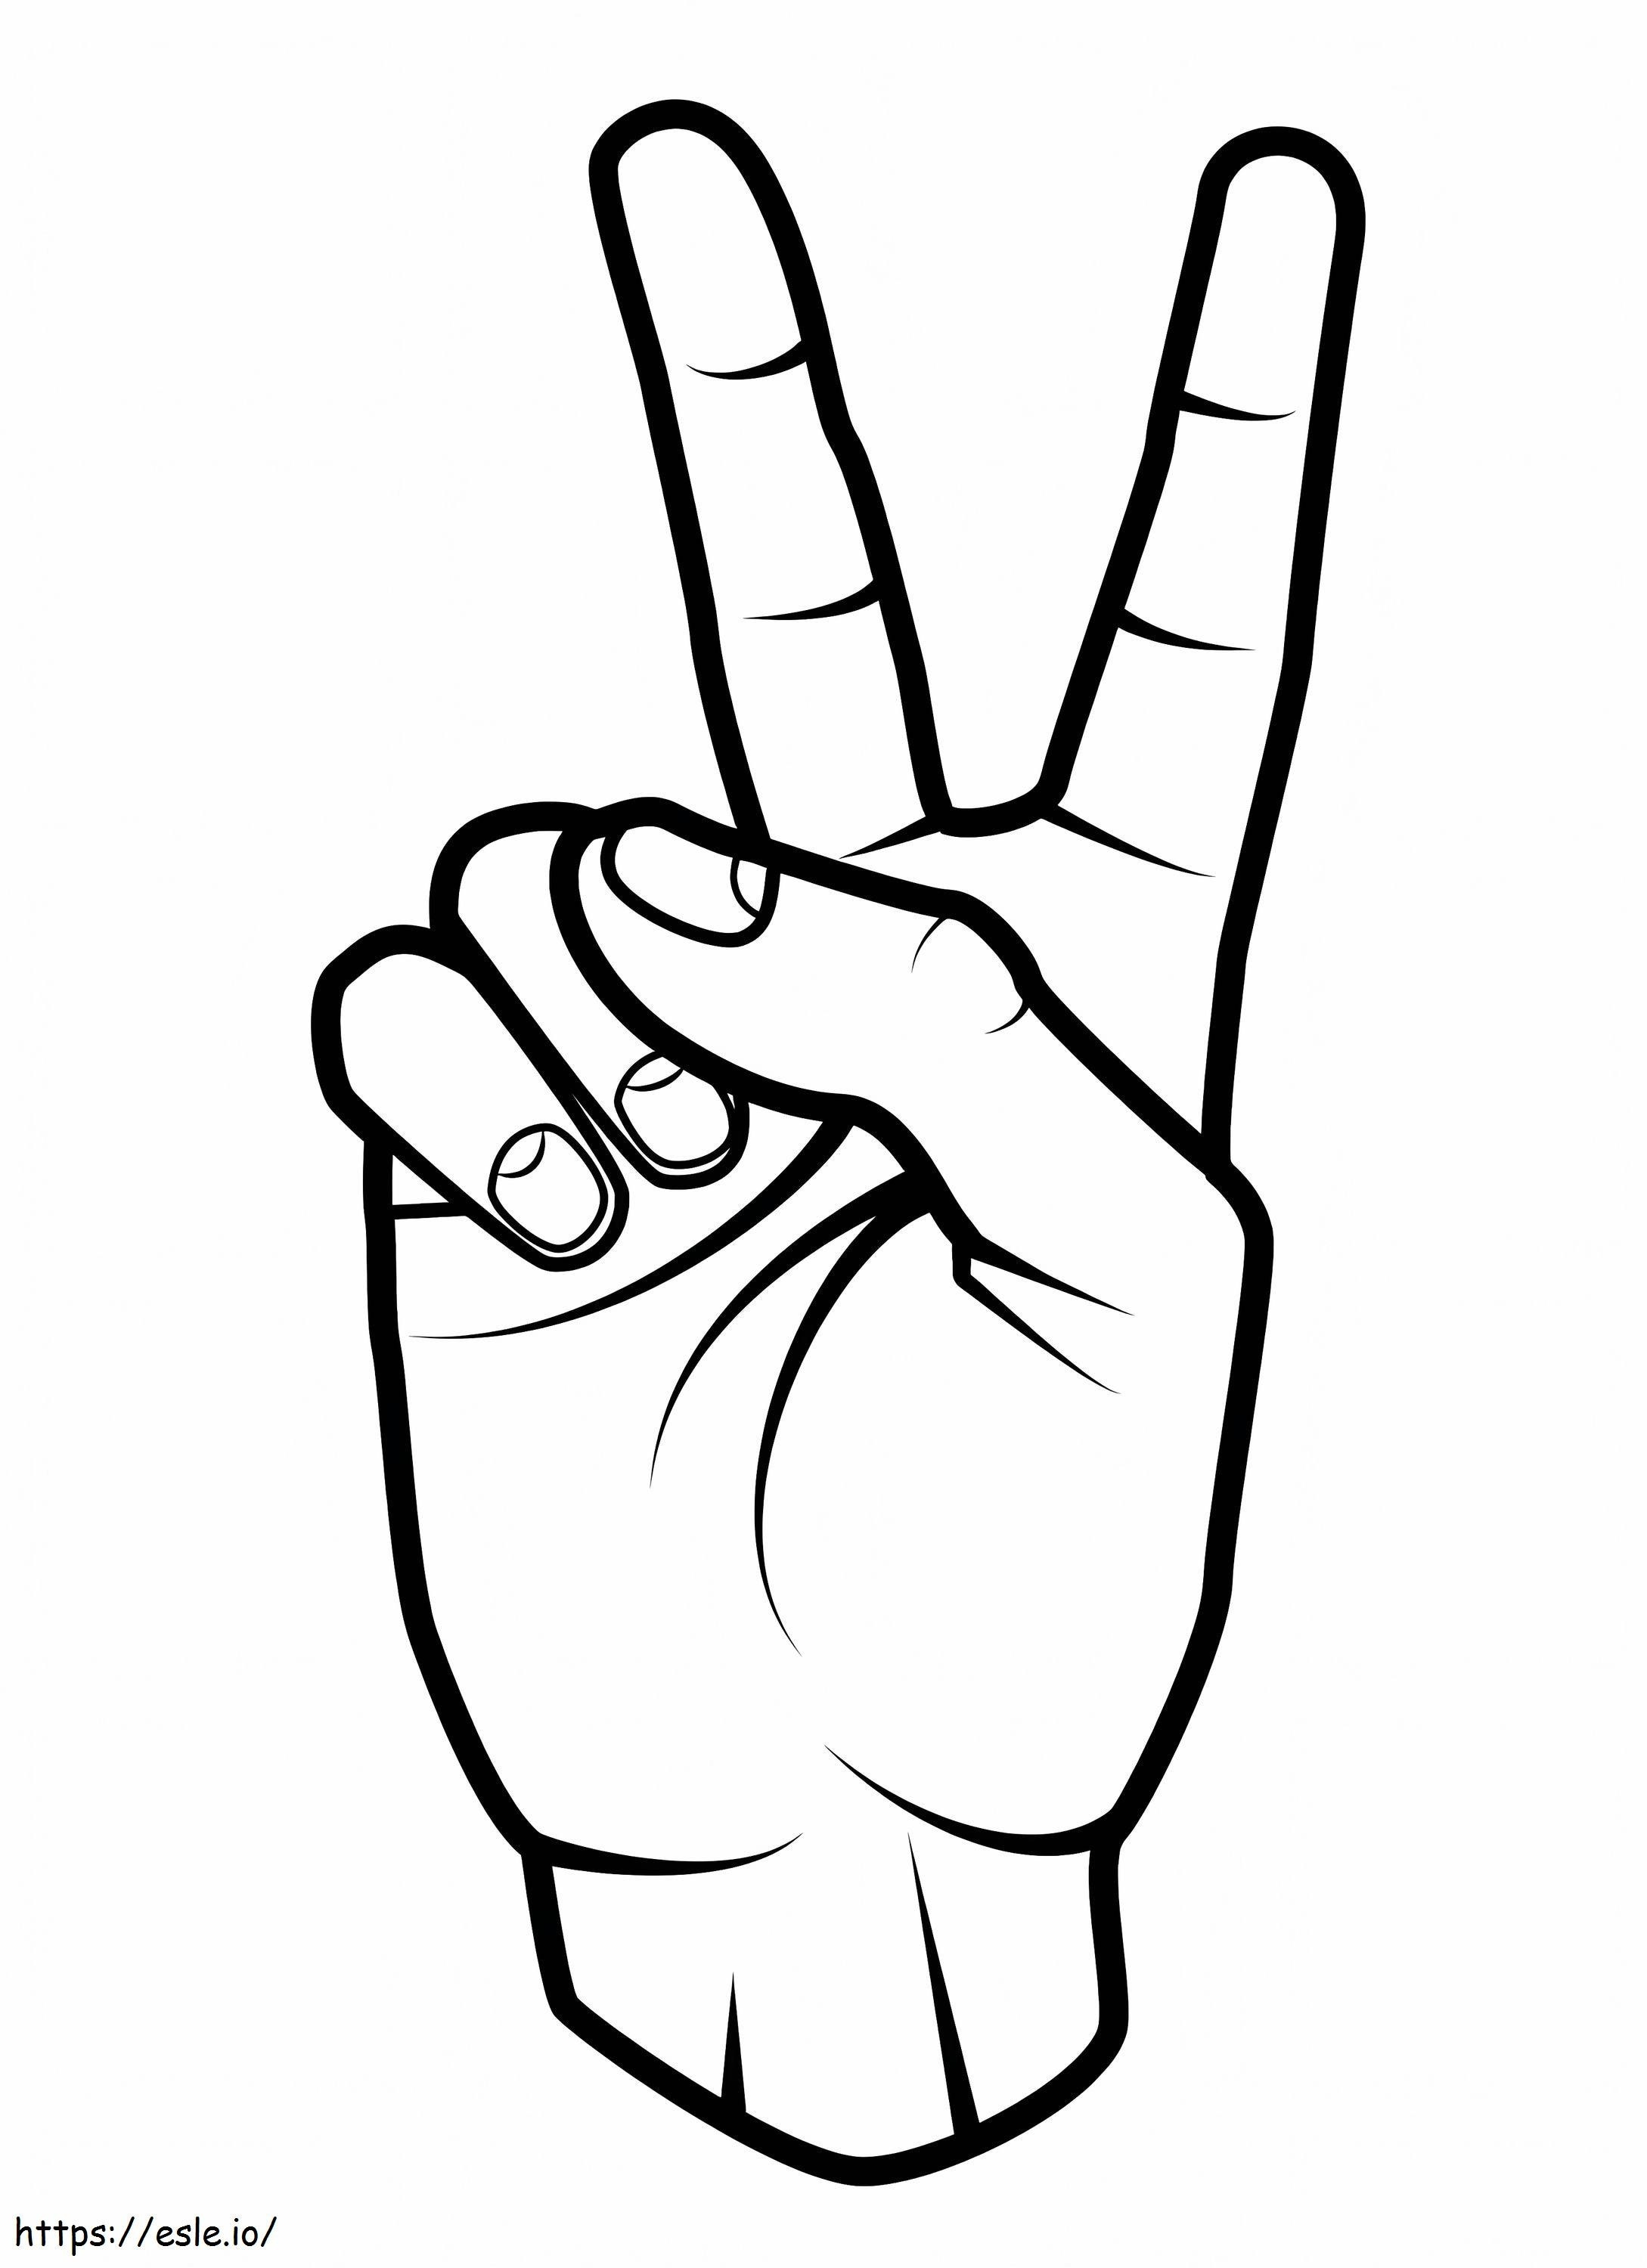 Friedenszeichen-Hand ausmalbilder